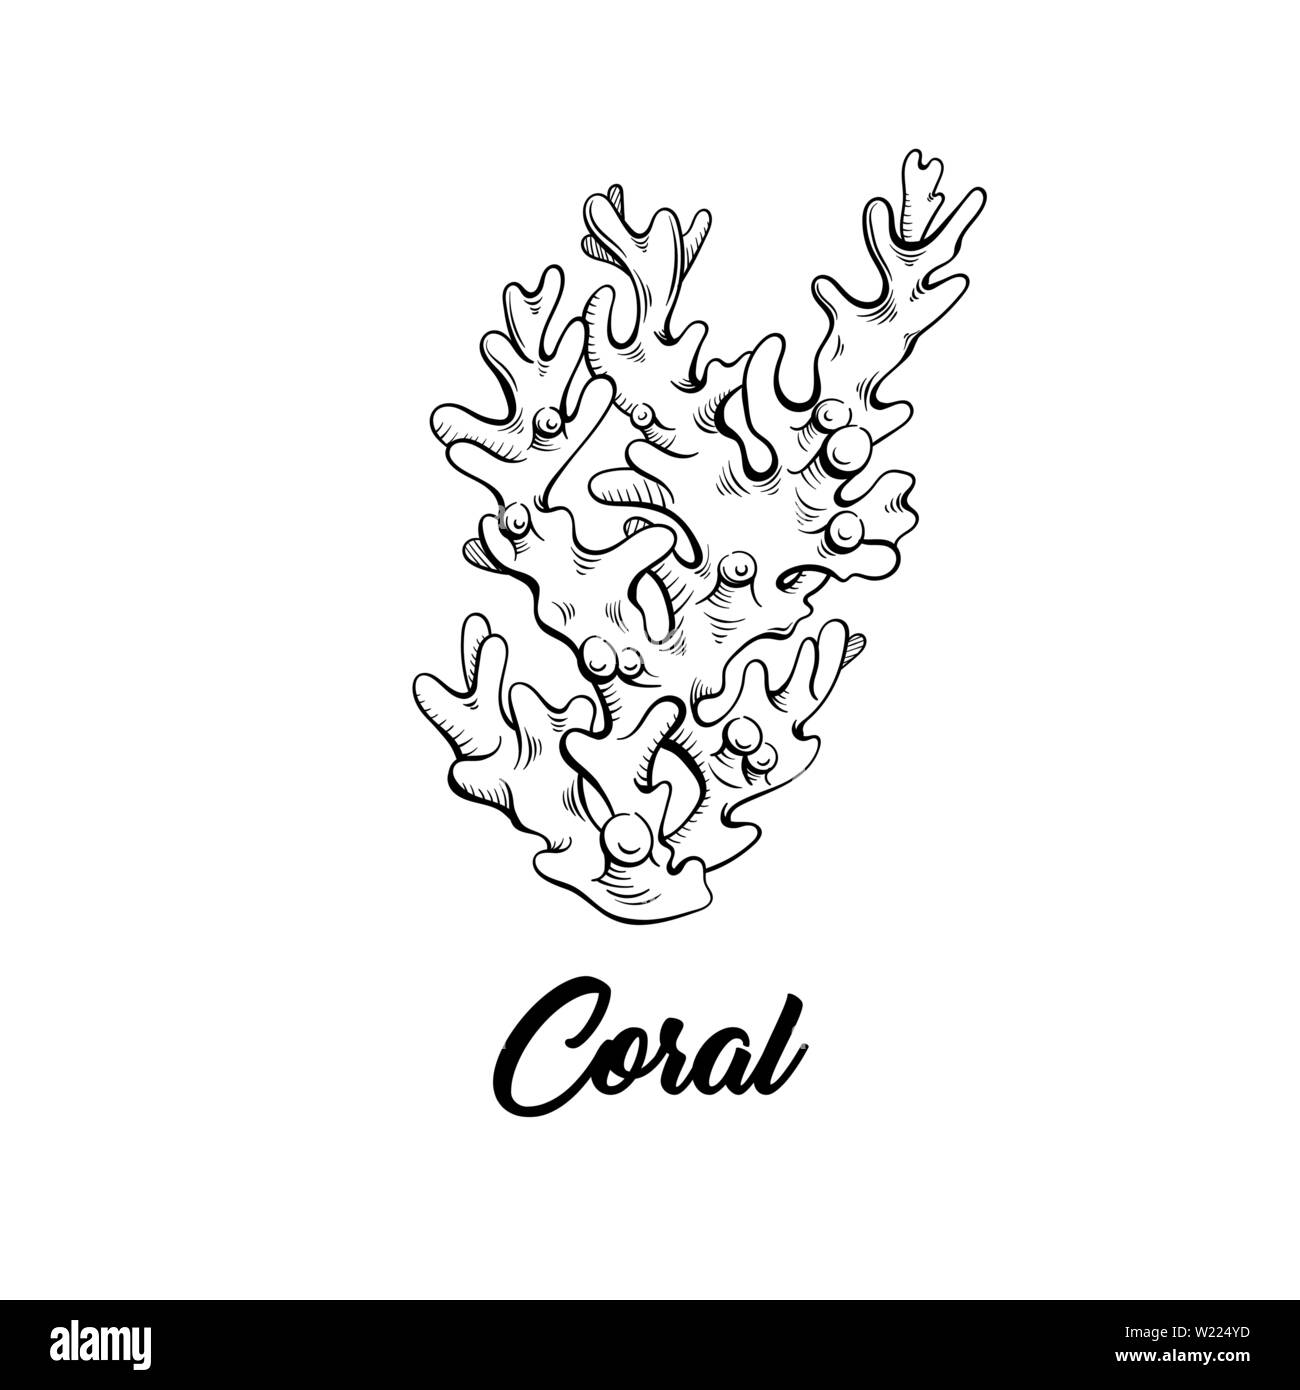 Coral inchiostro nero disegnati a mano illustrazione. La vita marina, mare ecosistema reef wildlife incisione in bianco e nero. Decorazione di acquario. Scuba diving, snorkeling logo del club. Poster, striscioni elemento di design Illustrazione Vettoriale